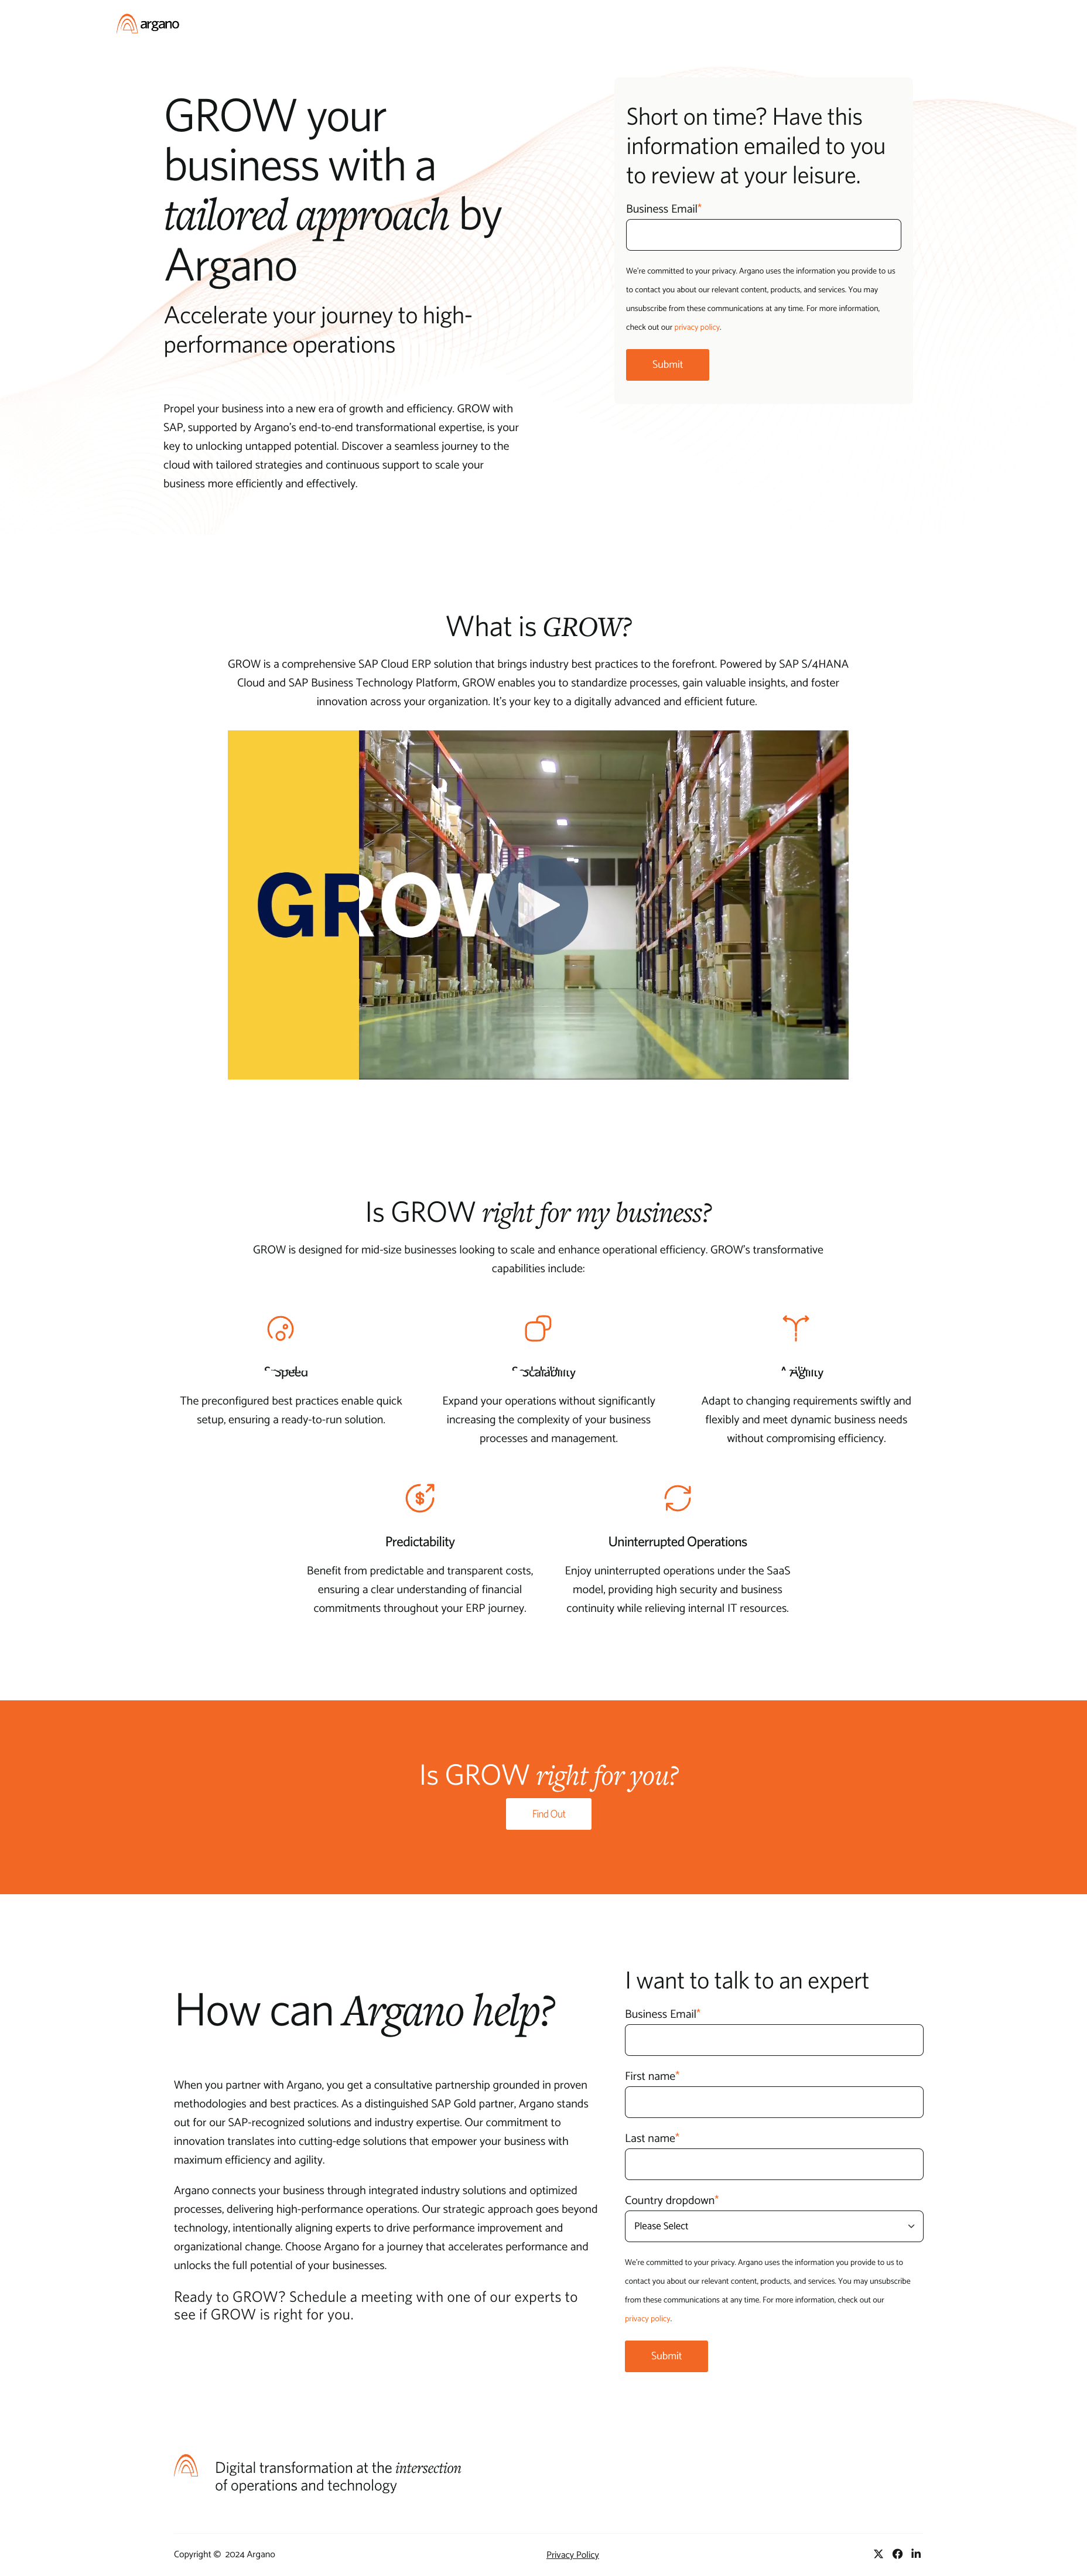 Argano: GROW with SAP